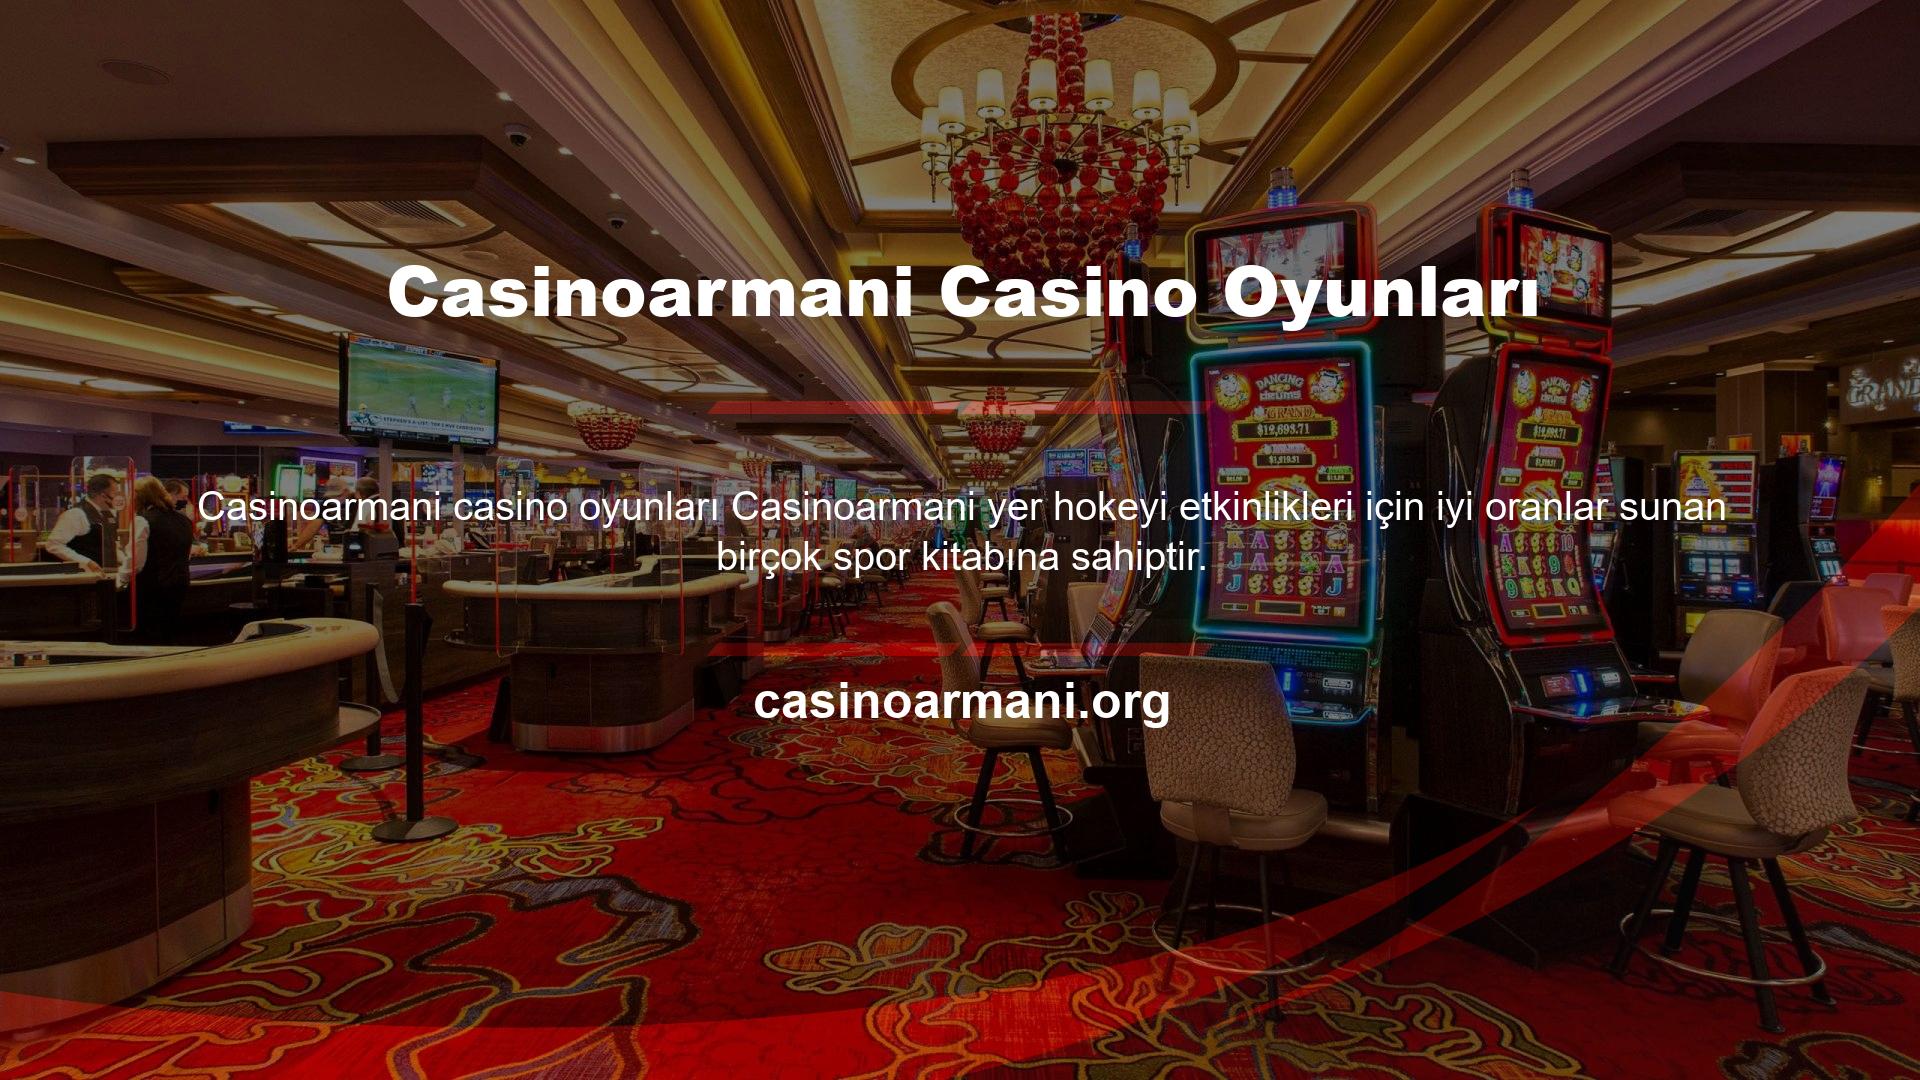 Casinoarmani son derece düşük komisyonları, gelişmiş para yatırma yöntemleri, göz alıcı bisiklet ödülleri ve oyun deneyimleri ve hizmetleri ile birçok casino oyununda rakipsizdir